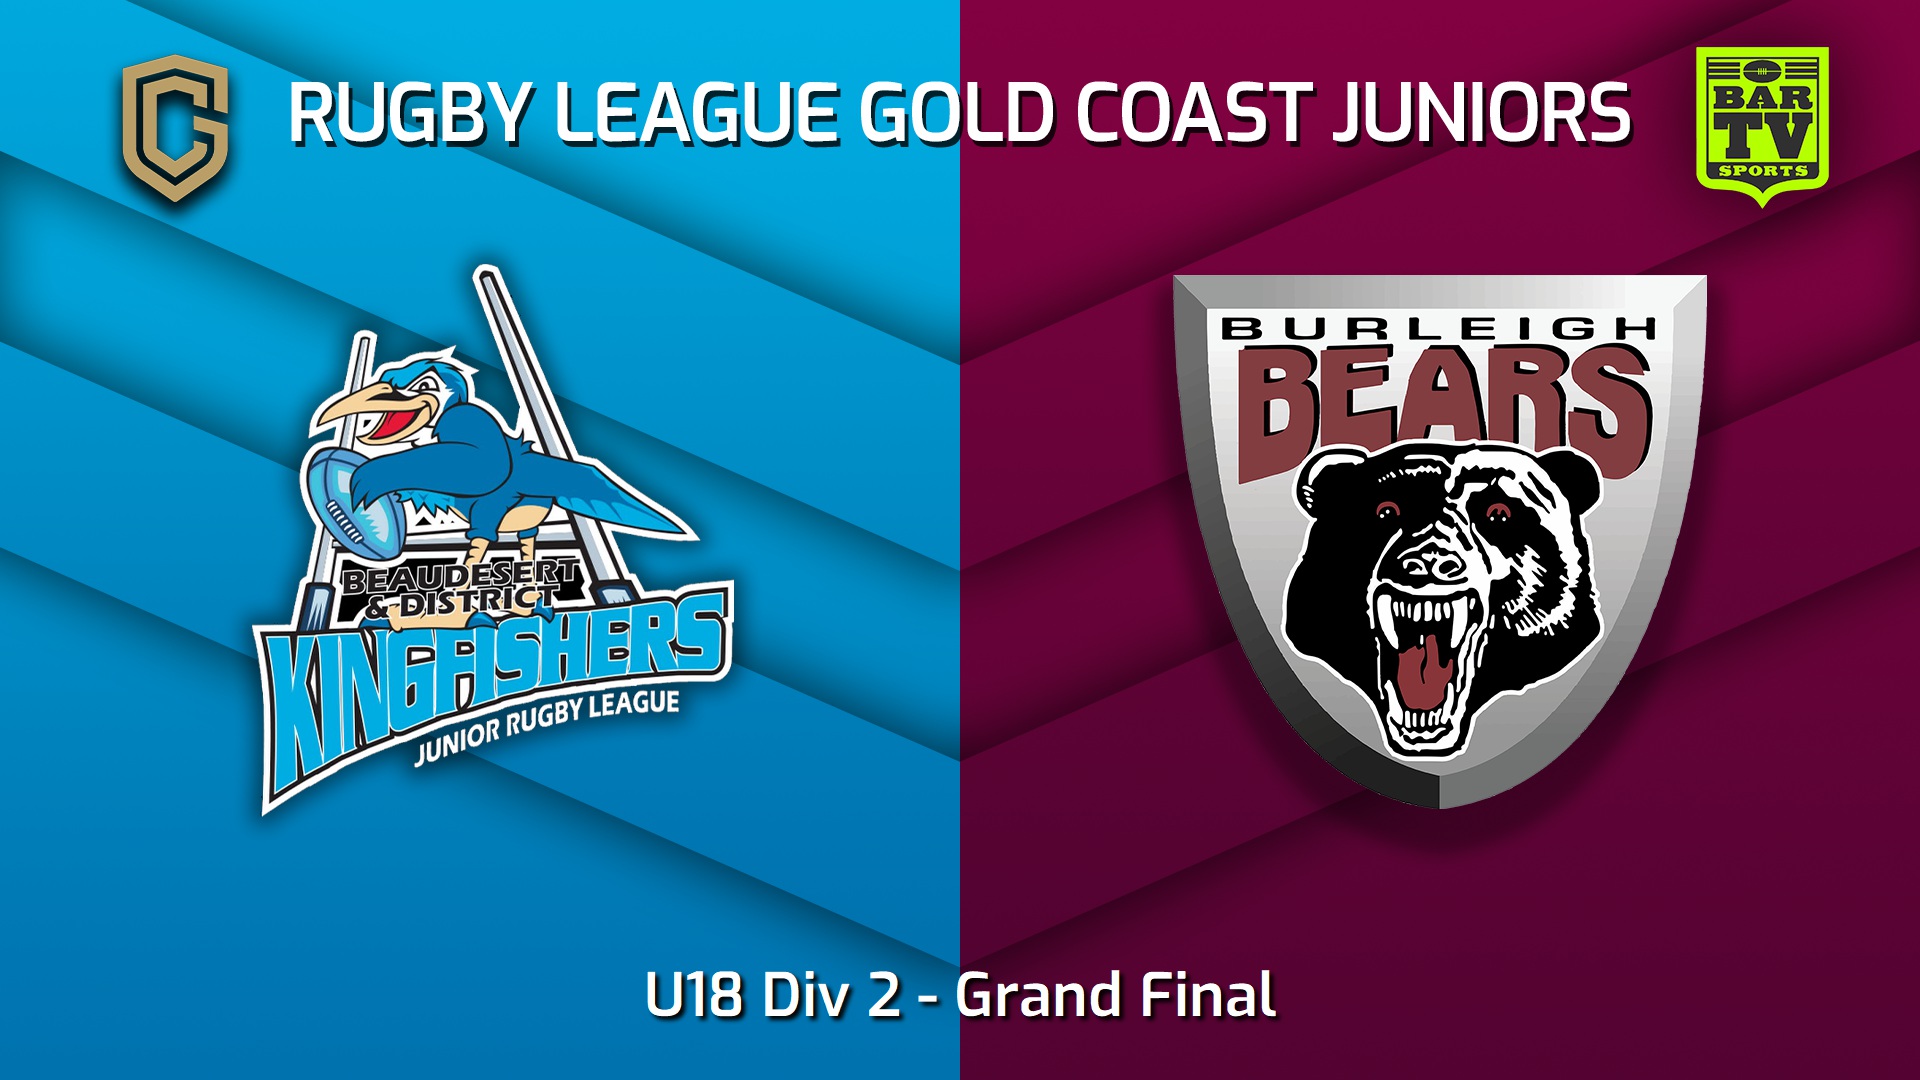 Rugby League Gold Coast Juniors Grand Final - U18 Div 2